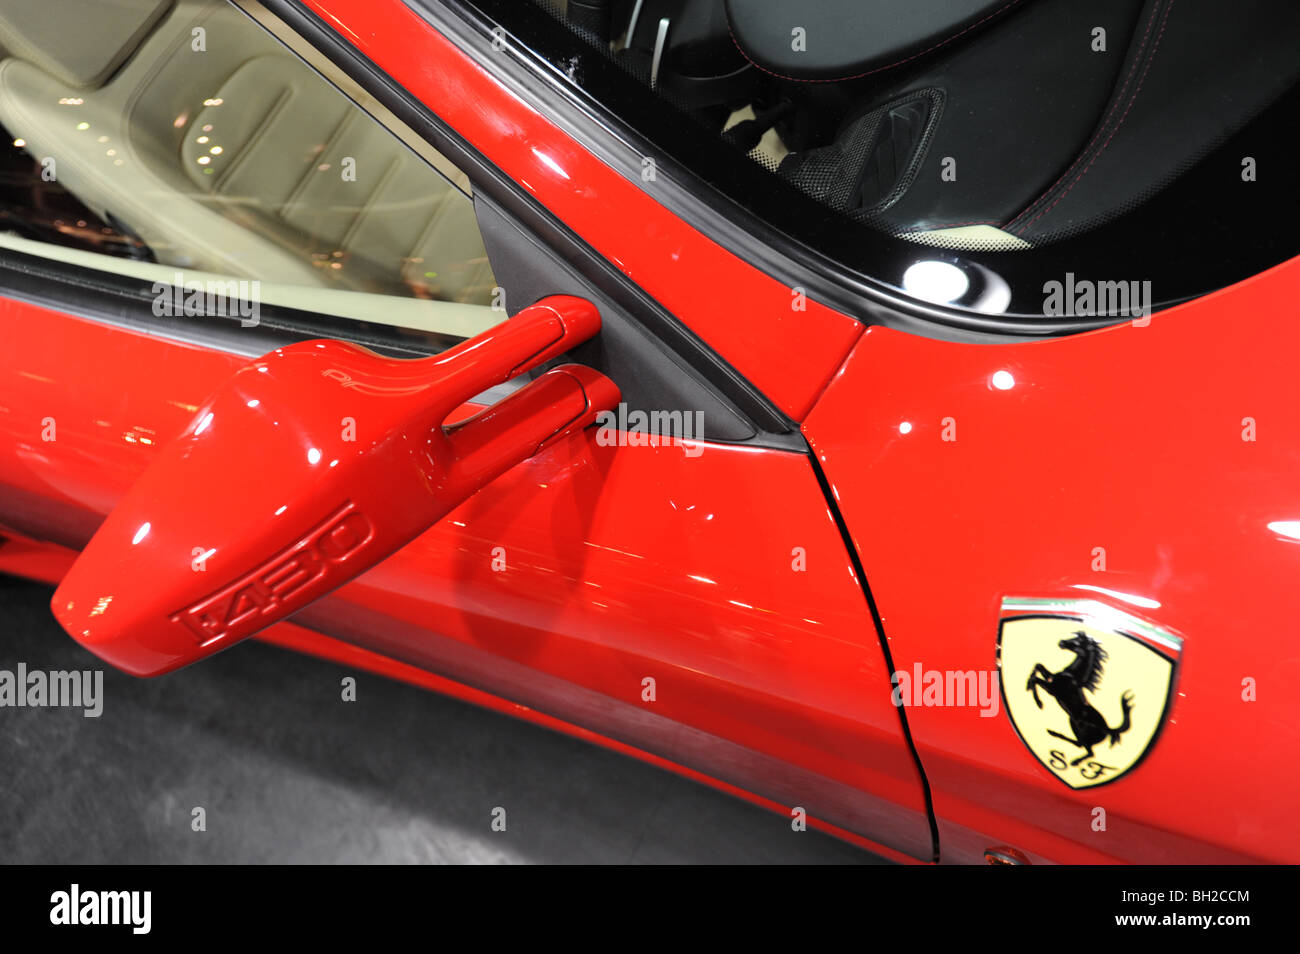 Detalles de un Ferrari F 430 supercar Foto de stock